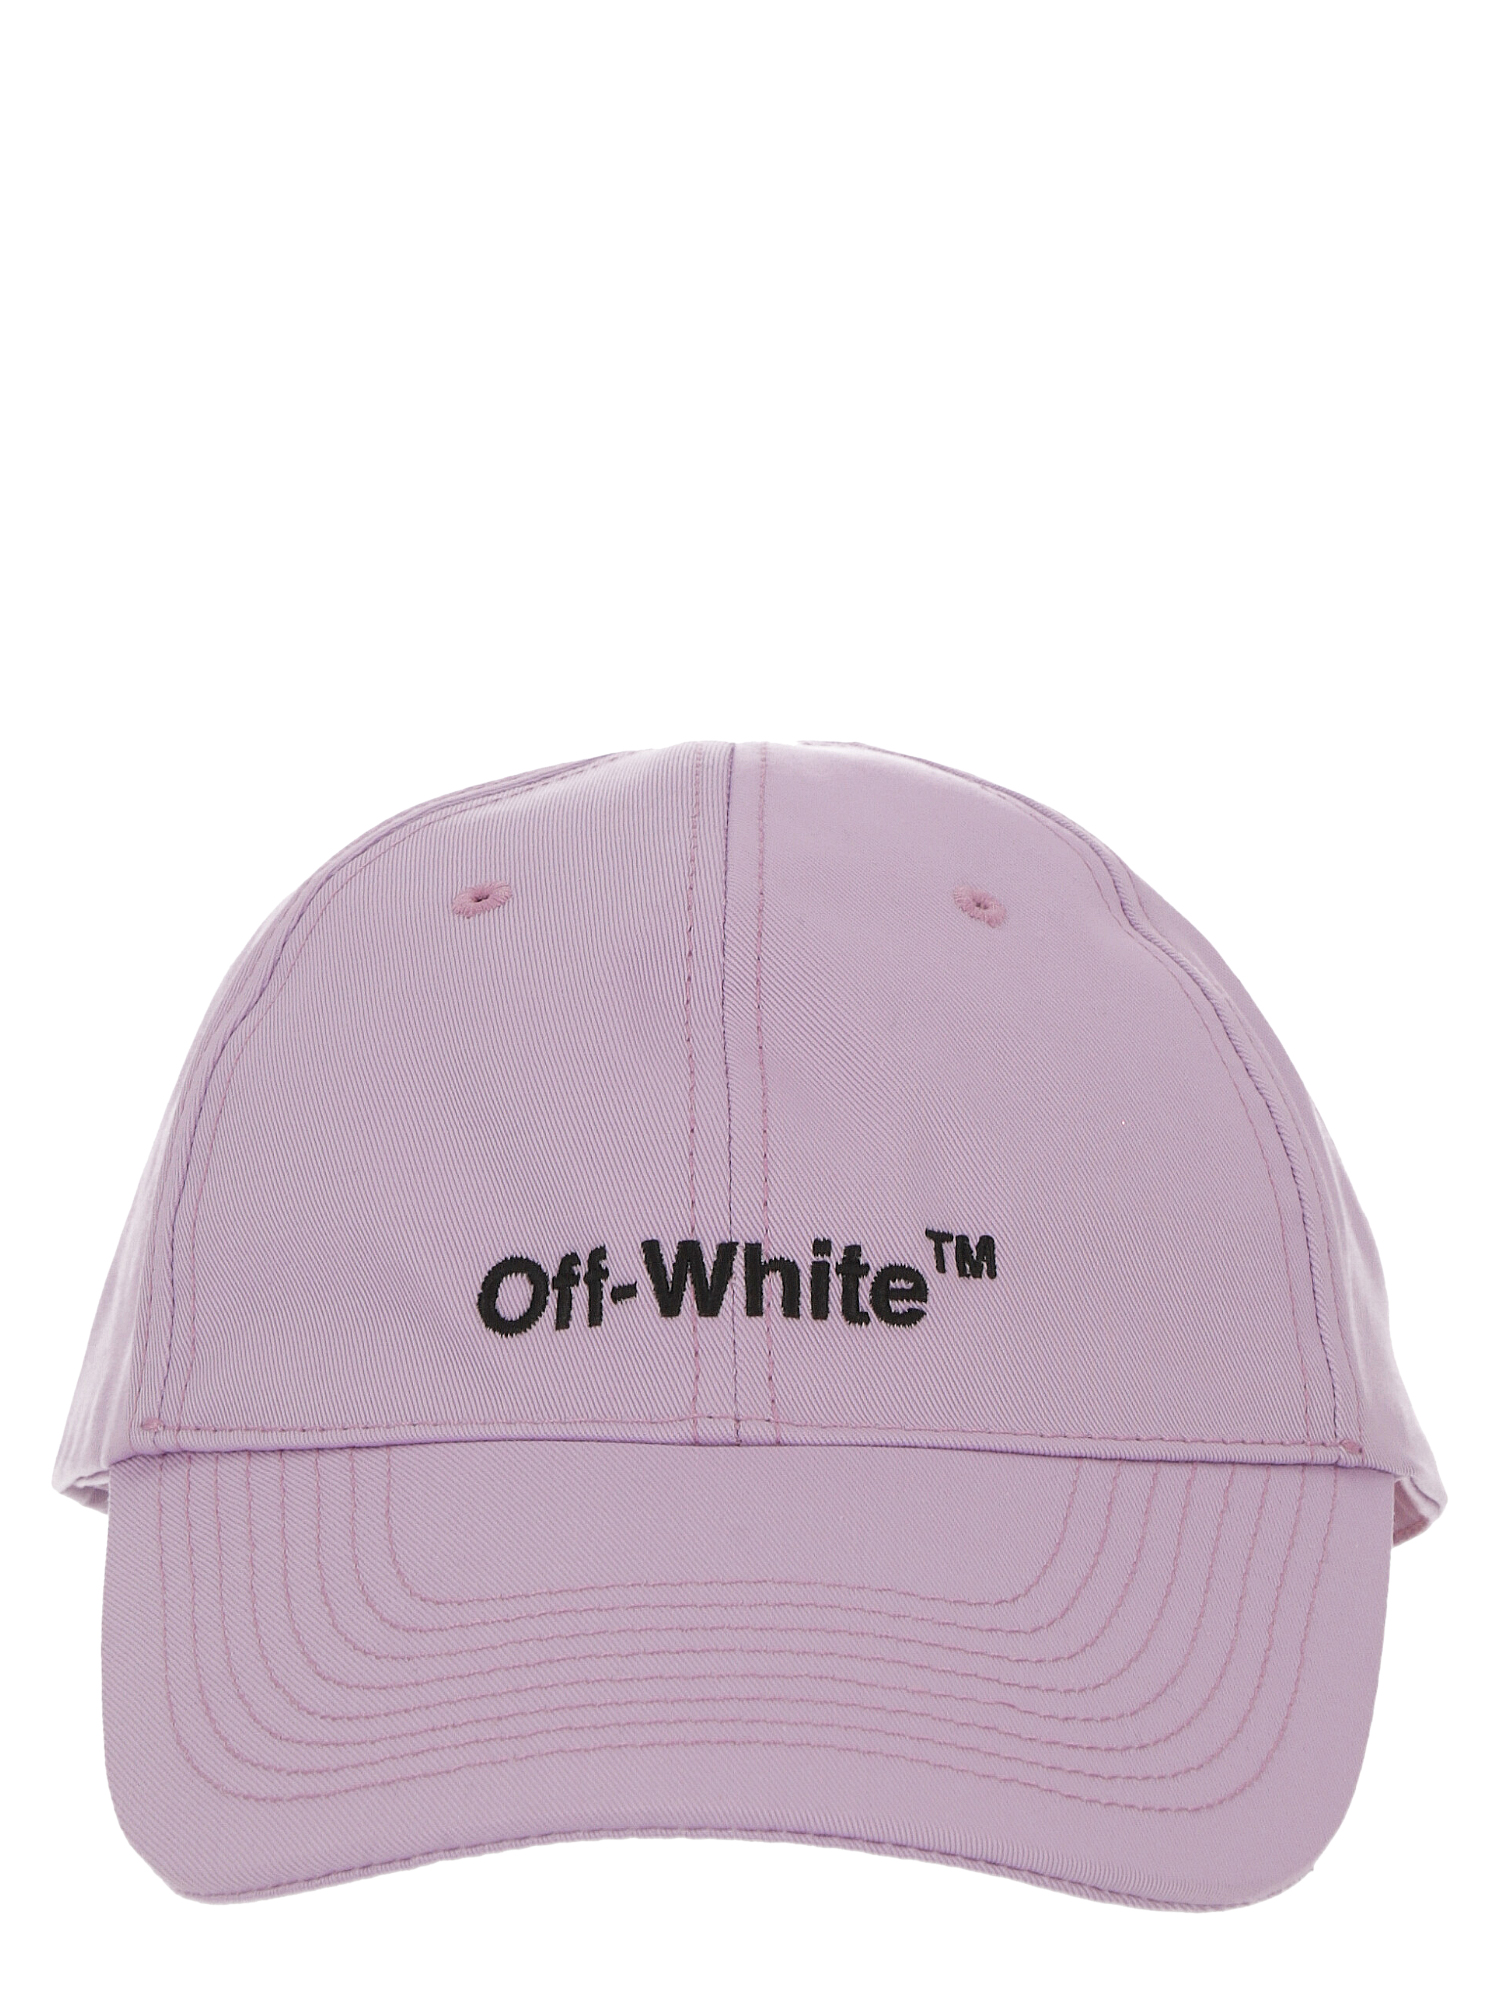 Chapeaux Pour Femme - Off-White - En Cotton Multicolor - Taille:  -